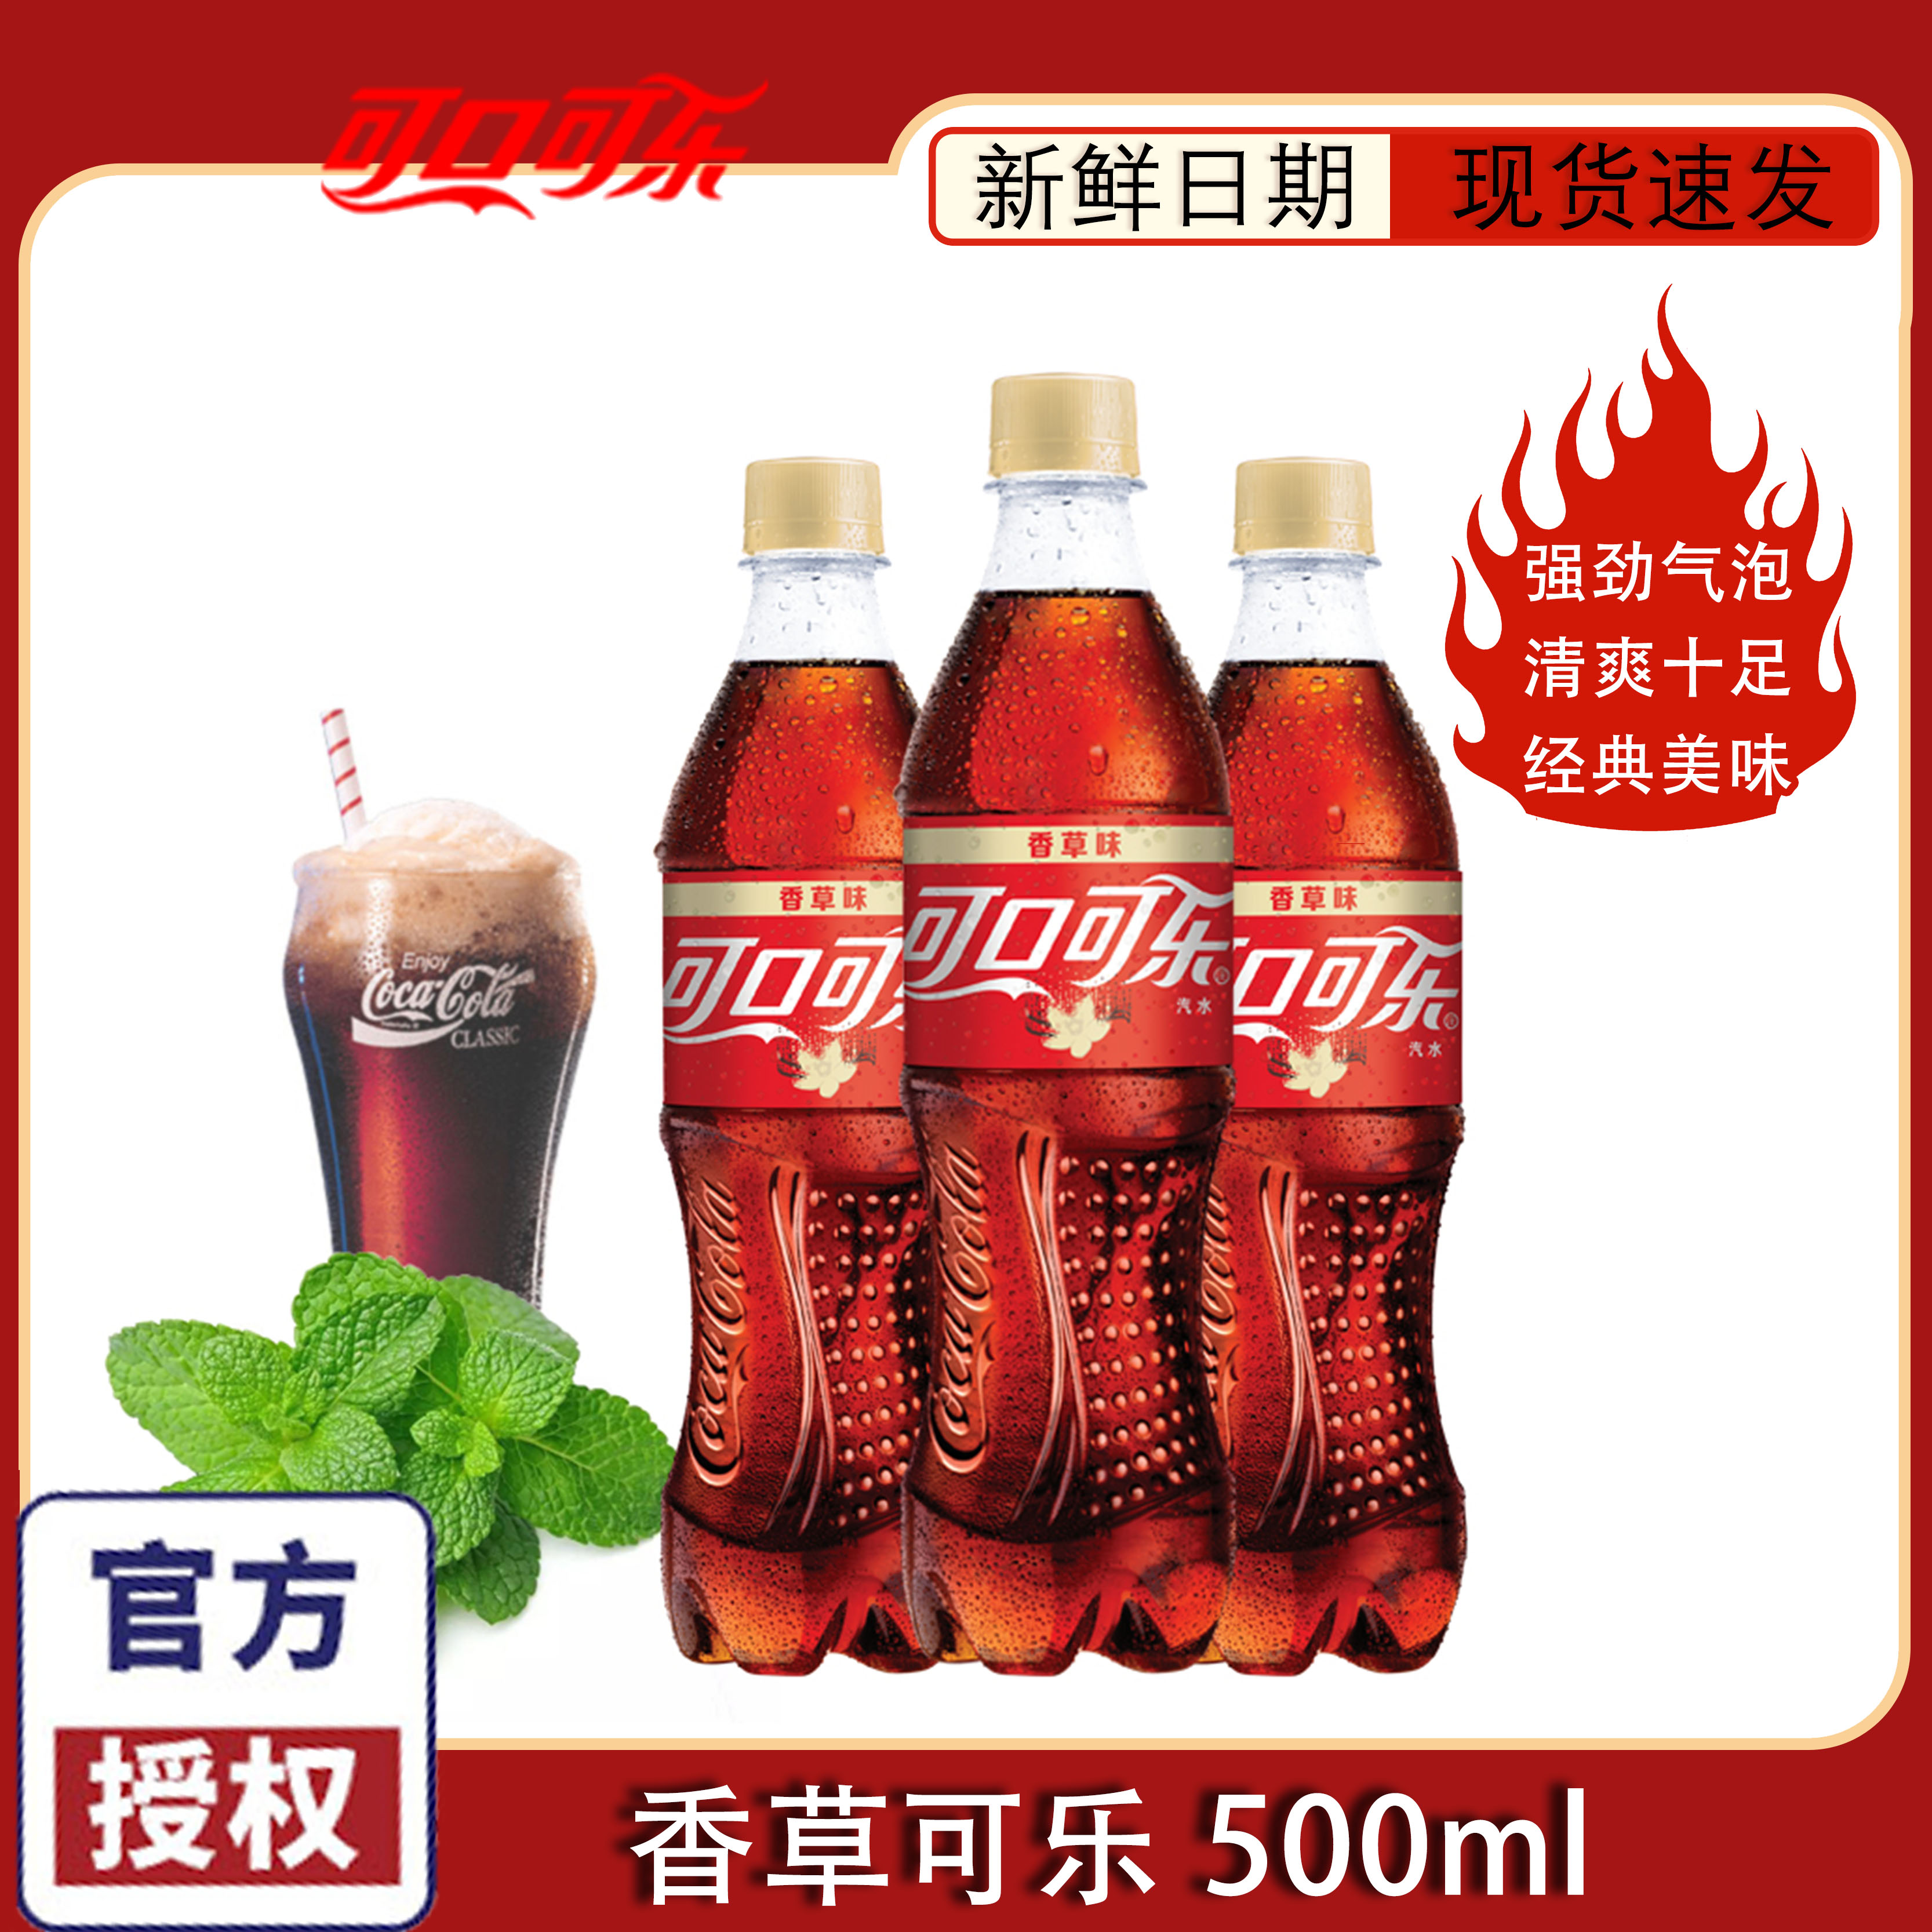 可口可乐香草味可乐500mlx24瓶装碳酸饮料整箱网红特价-封面